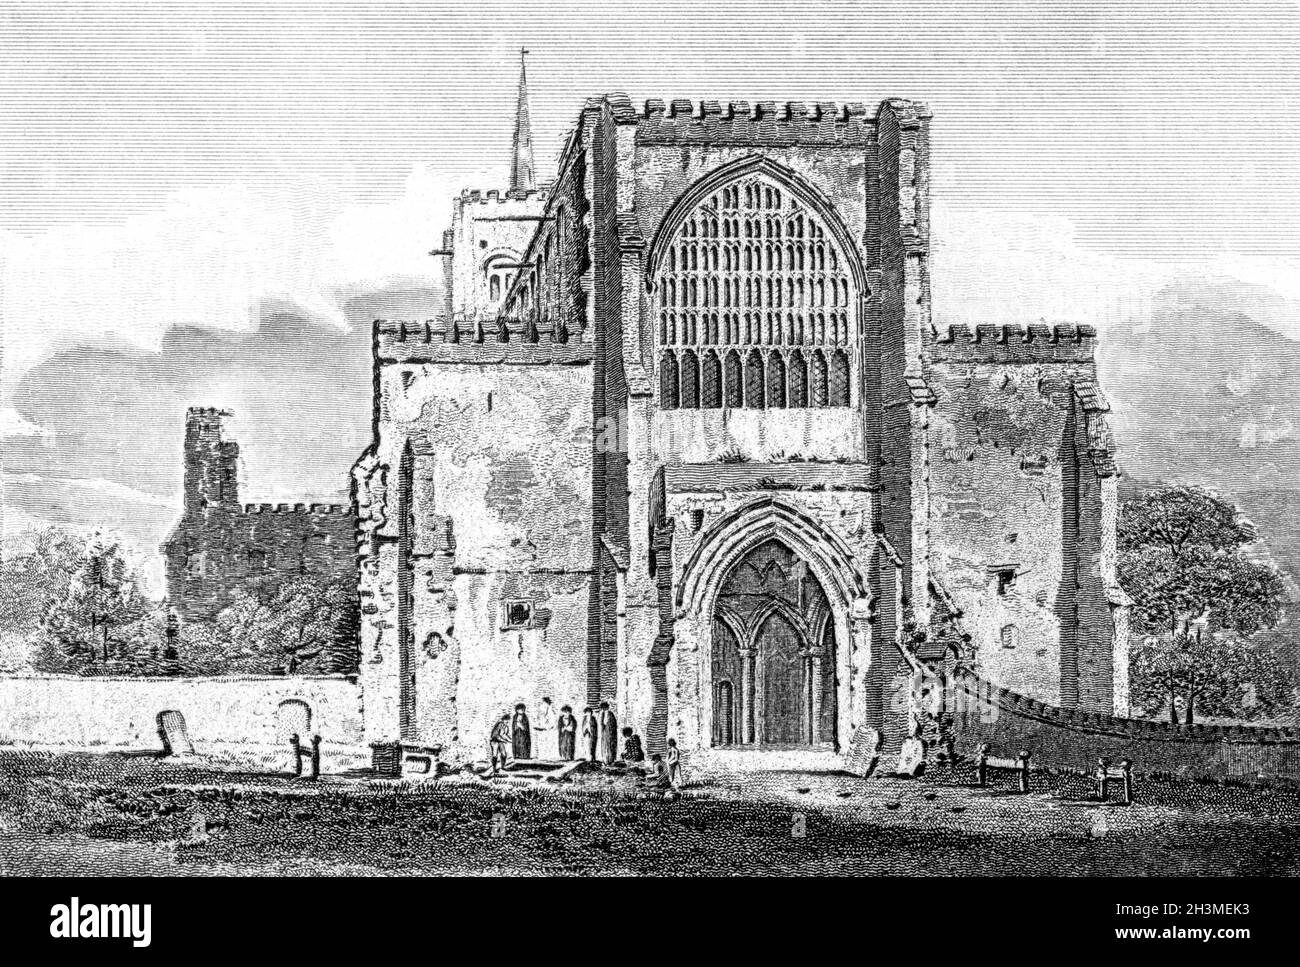 Gravure de l'église de l'abbaye de St Albans, Hertfordshire UK a scanné à haute résolution à partir d'un livre imprimé en 1812.Je pensais libre de droits d'auteur. Banque D'Images